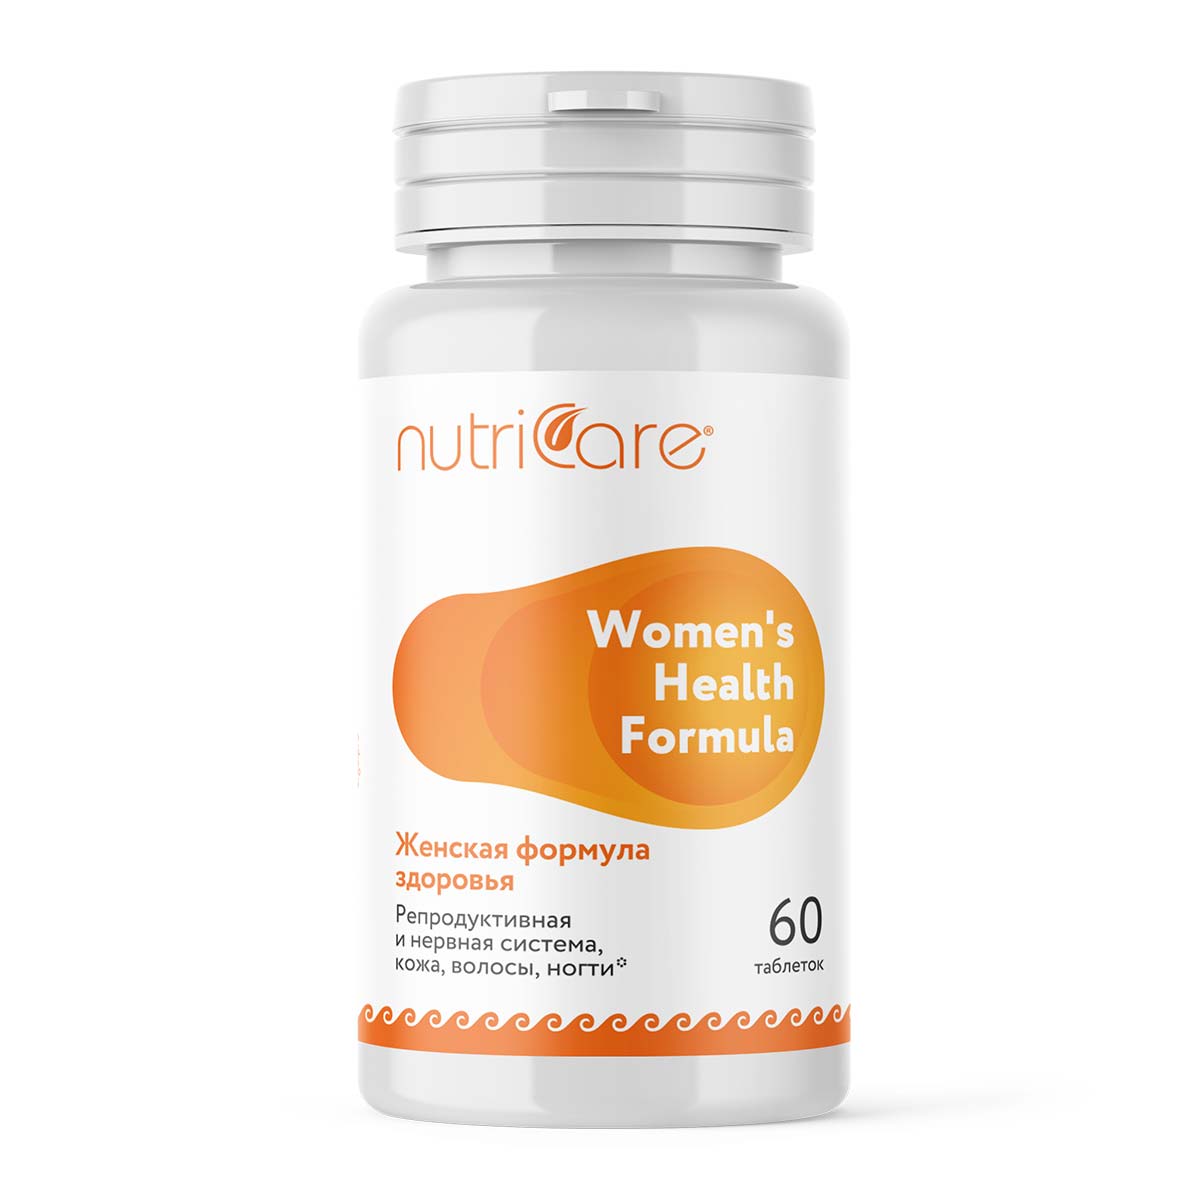 Женская формула здоровья от Nutricare